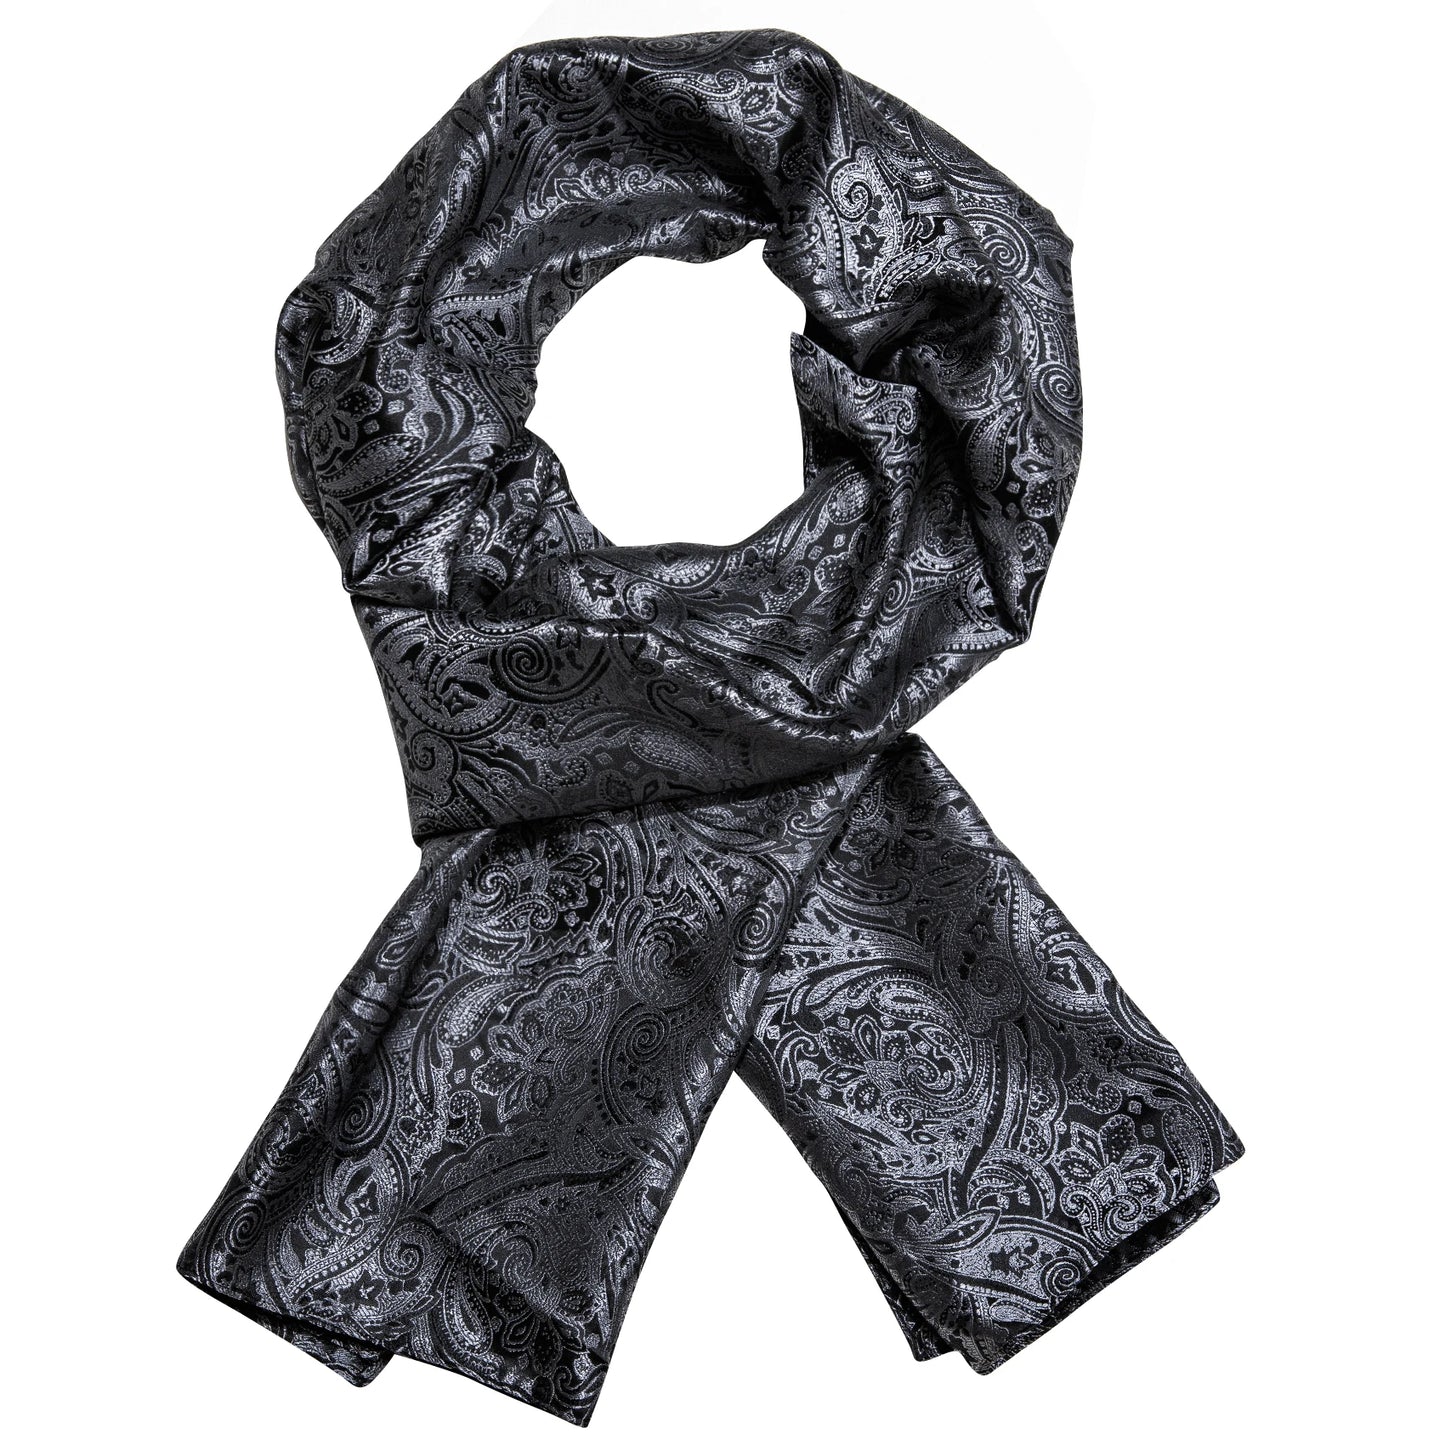 Muoti silkki huivi luksusbändin suunnittelija miehet naiset mustat paisley shawl bandanna flulard äänenvaimentimet pashmina barry. Wang A-1022